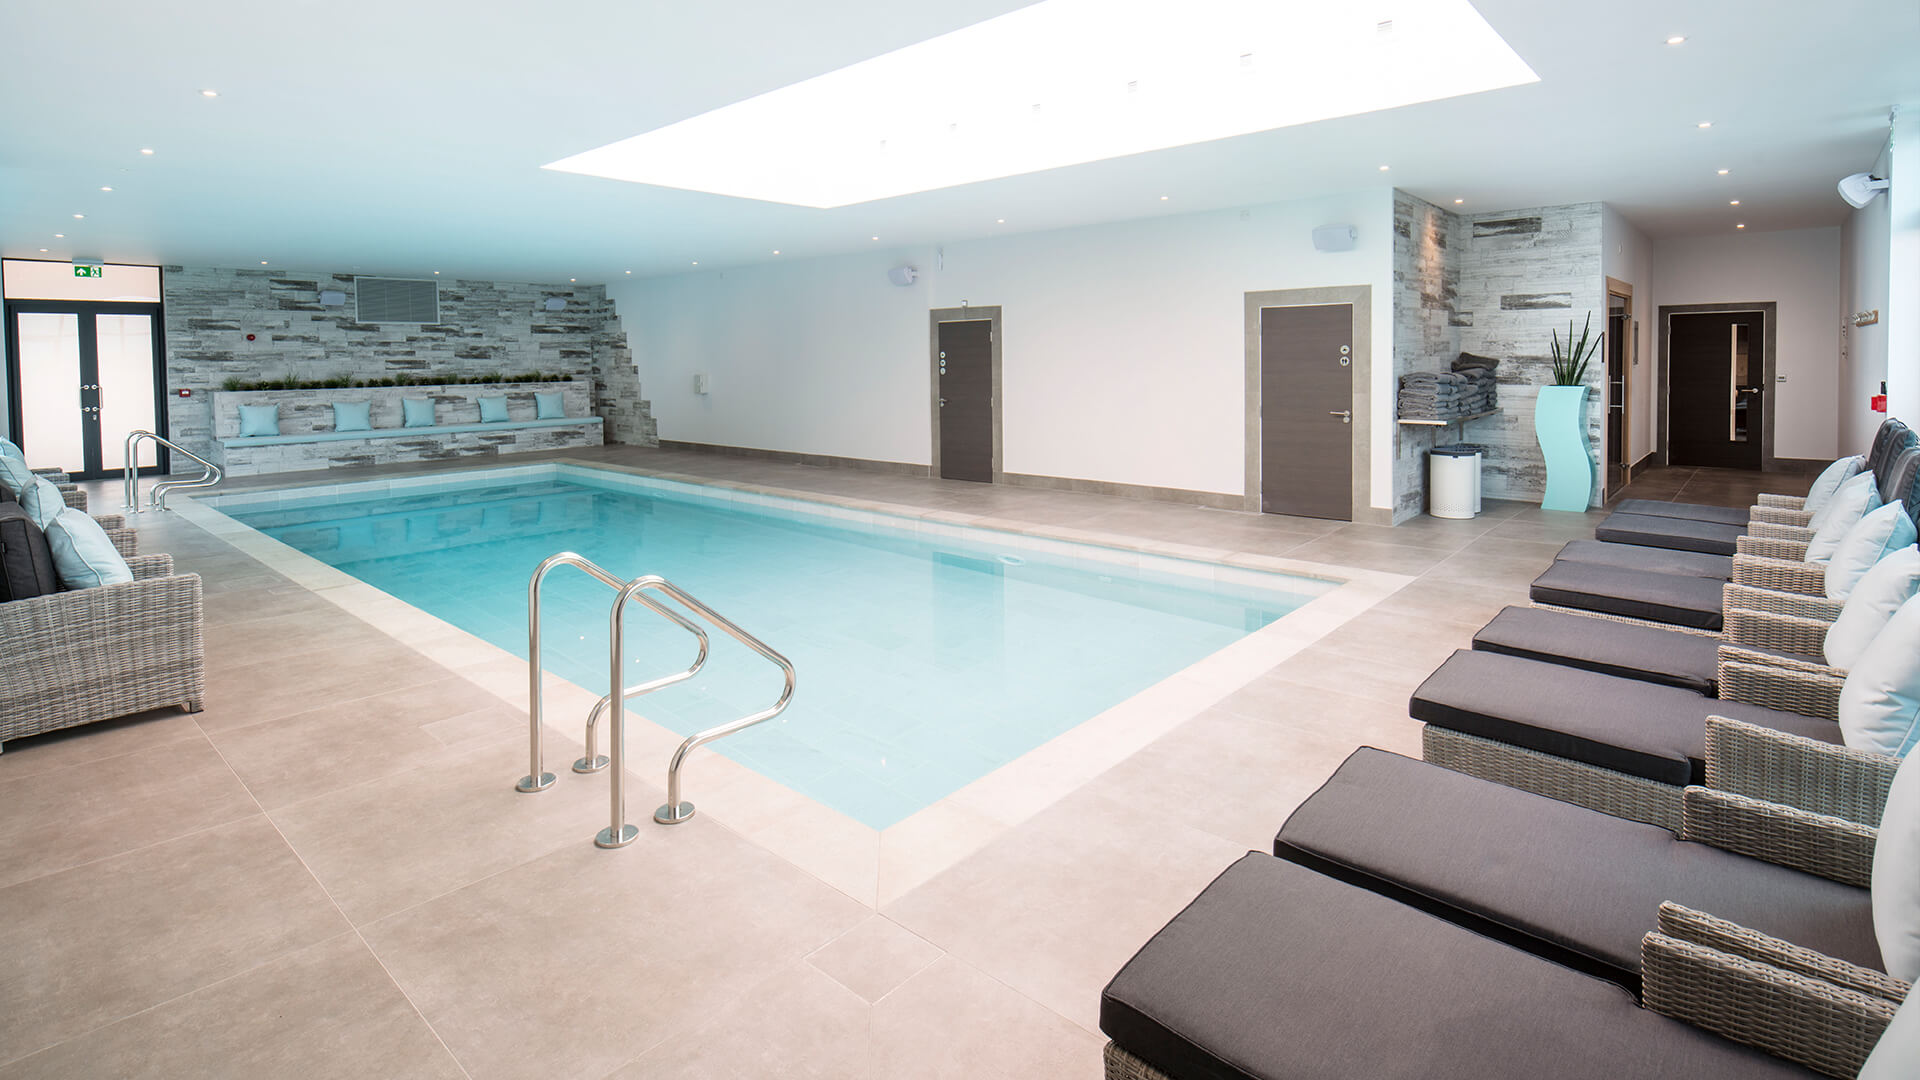 客人可以在十二米长的室内温水游泳池放松，并从专家的治疗师享受护理。